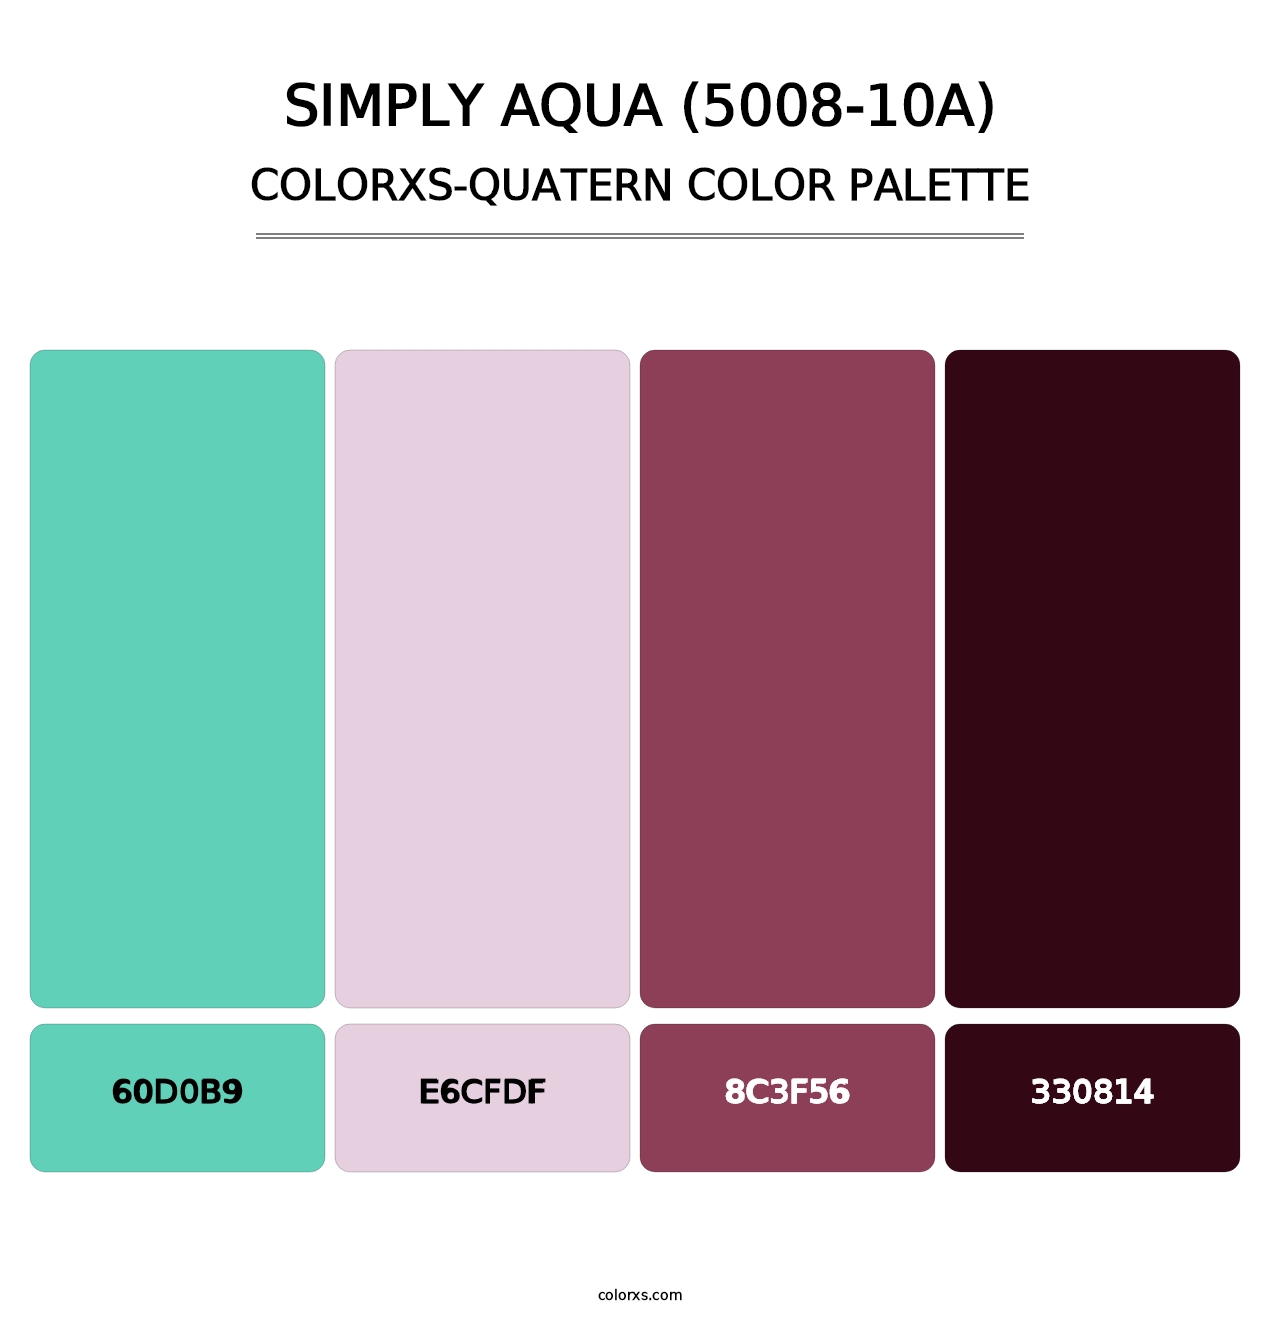 Simply Aqua (5008-10A) - Colorxs Quatern Palette